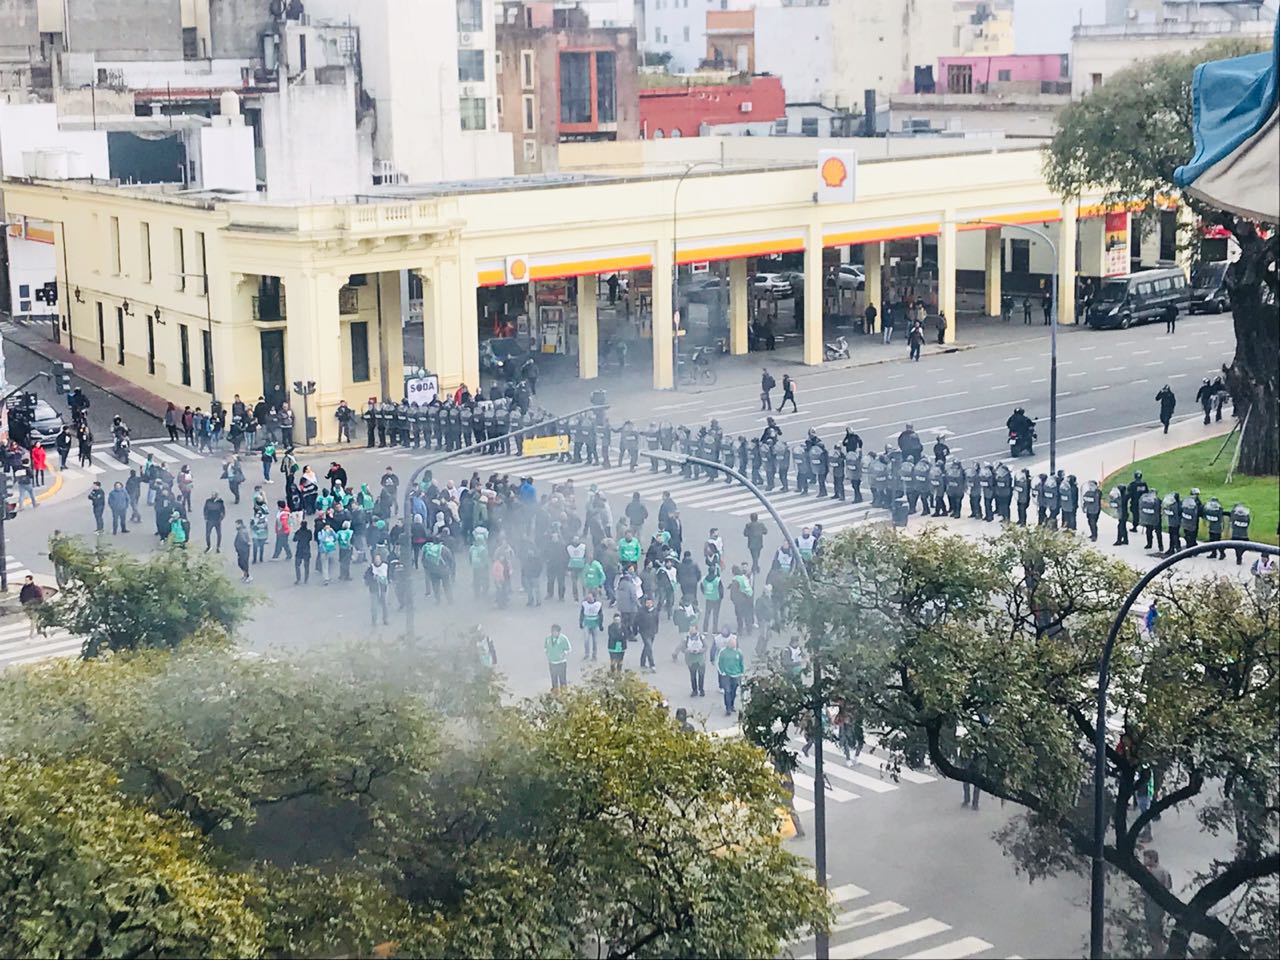 Escenas de la crisis: un ministerio ocupado pacíficamente contra más de 500 despidos